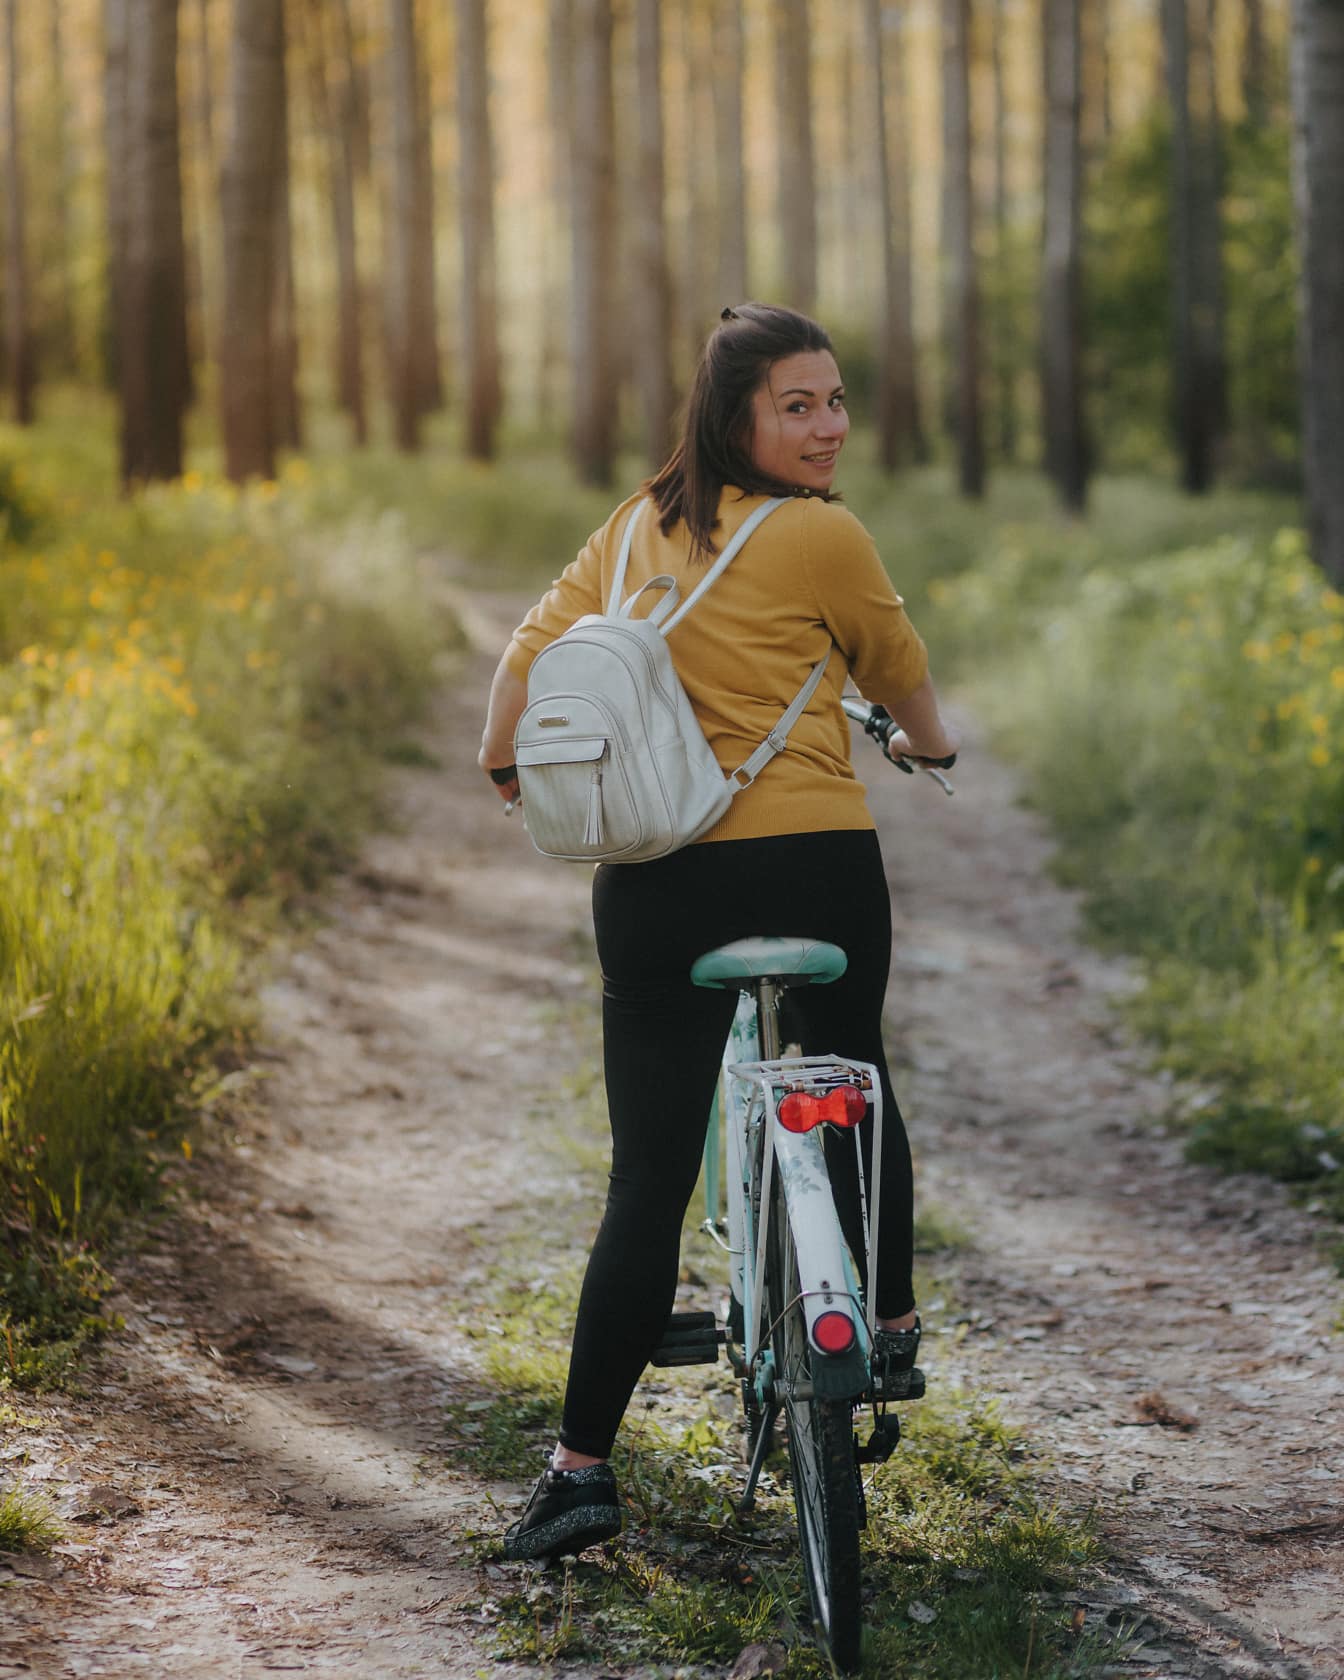 Wesoła brunetka siedzi na rowerze na leśnej drodze i ogląda się za siebie